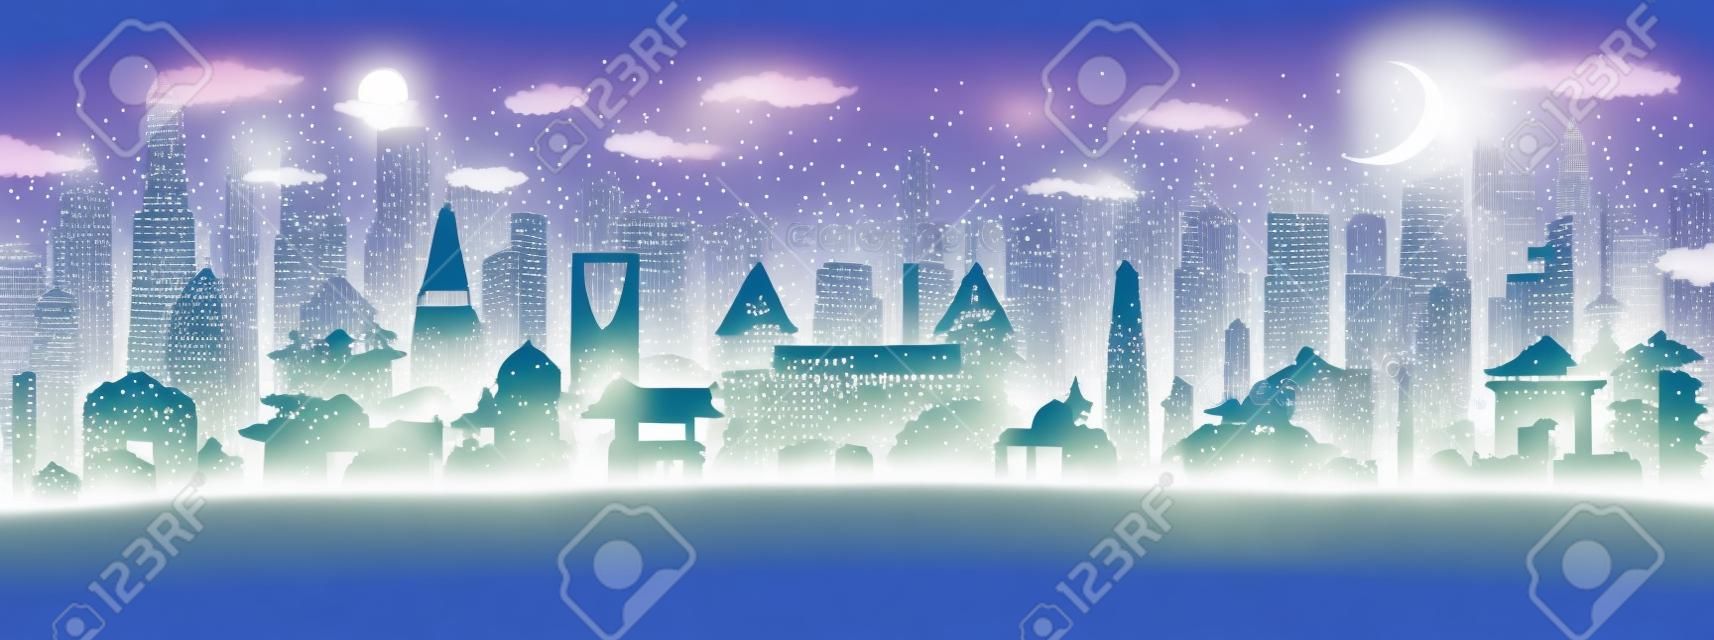 Asia City Skyline en papier découpé avec flocons de neige, lune et guirlande de néon. Illustration vectorielle. Concept de Noël et du nouvel an. Père Noël sur traîneau.